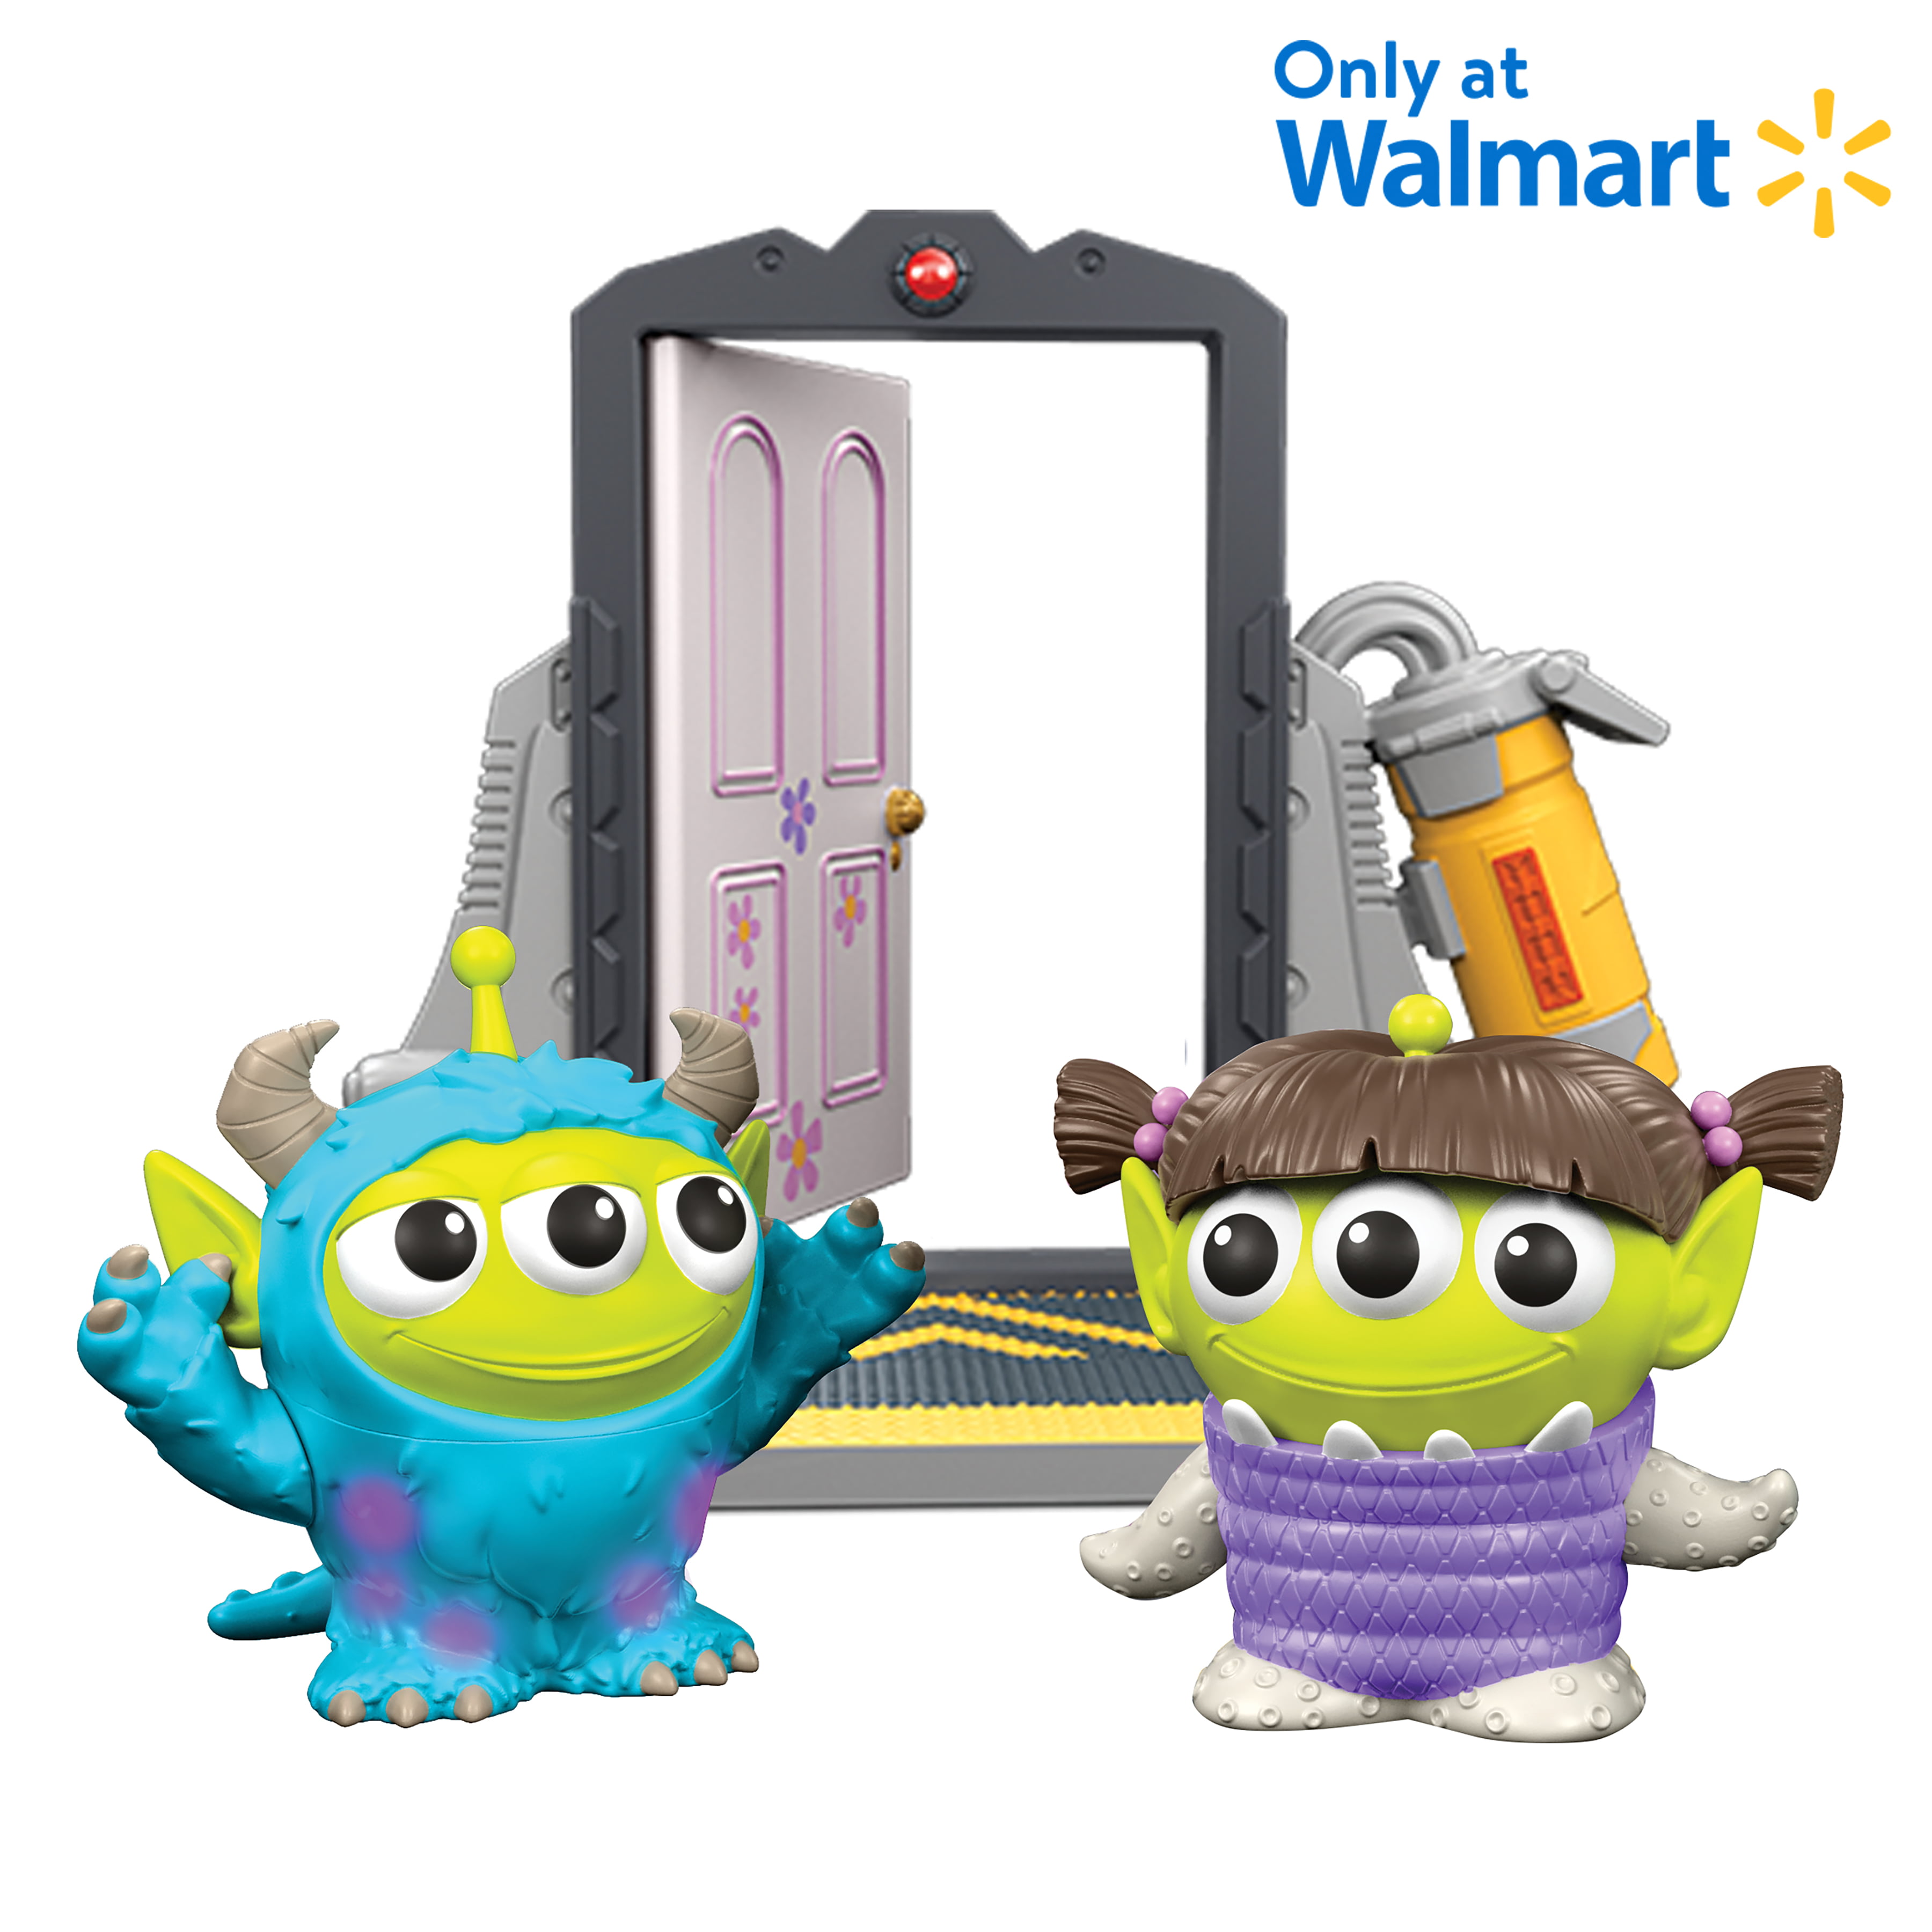 Pixar Alien Remix Monsters Inc Door Collector Pack Disney And Pixar Toy Story Mashup (Walmart Exclusive)